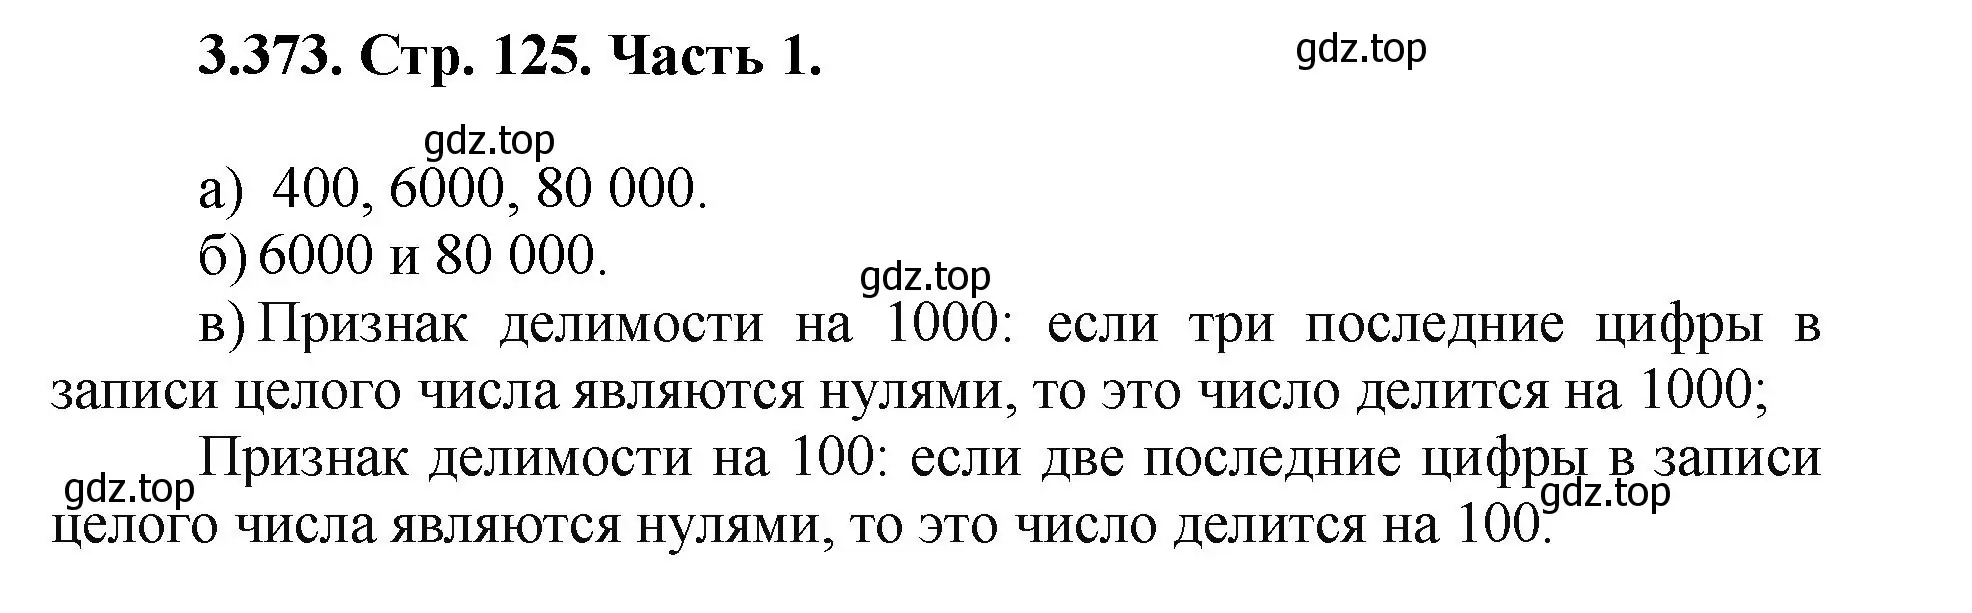 Решение номер 3.373 (страница 125) гдз по математике 5 класс Виленкин, Жохов, учебник 1 часть